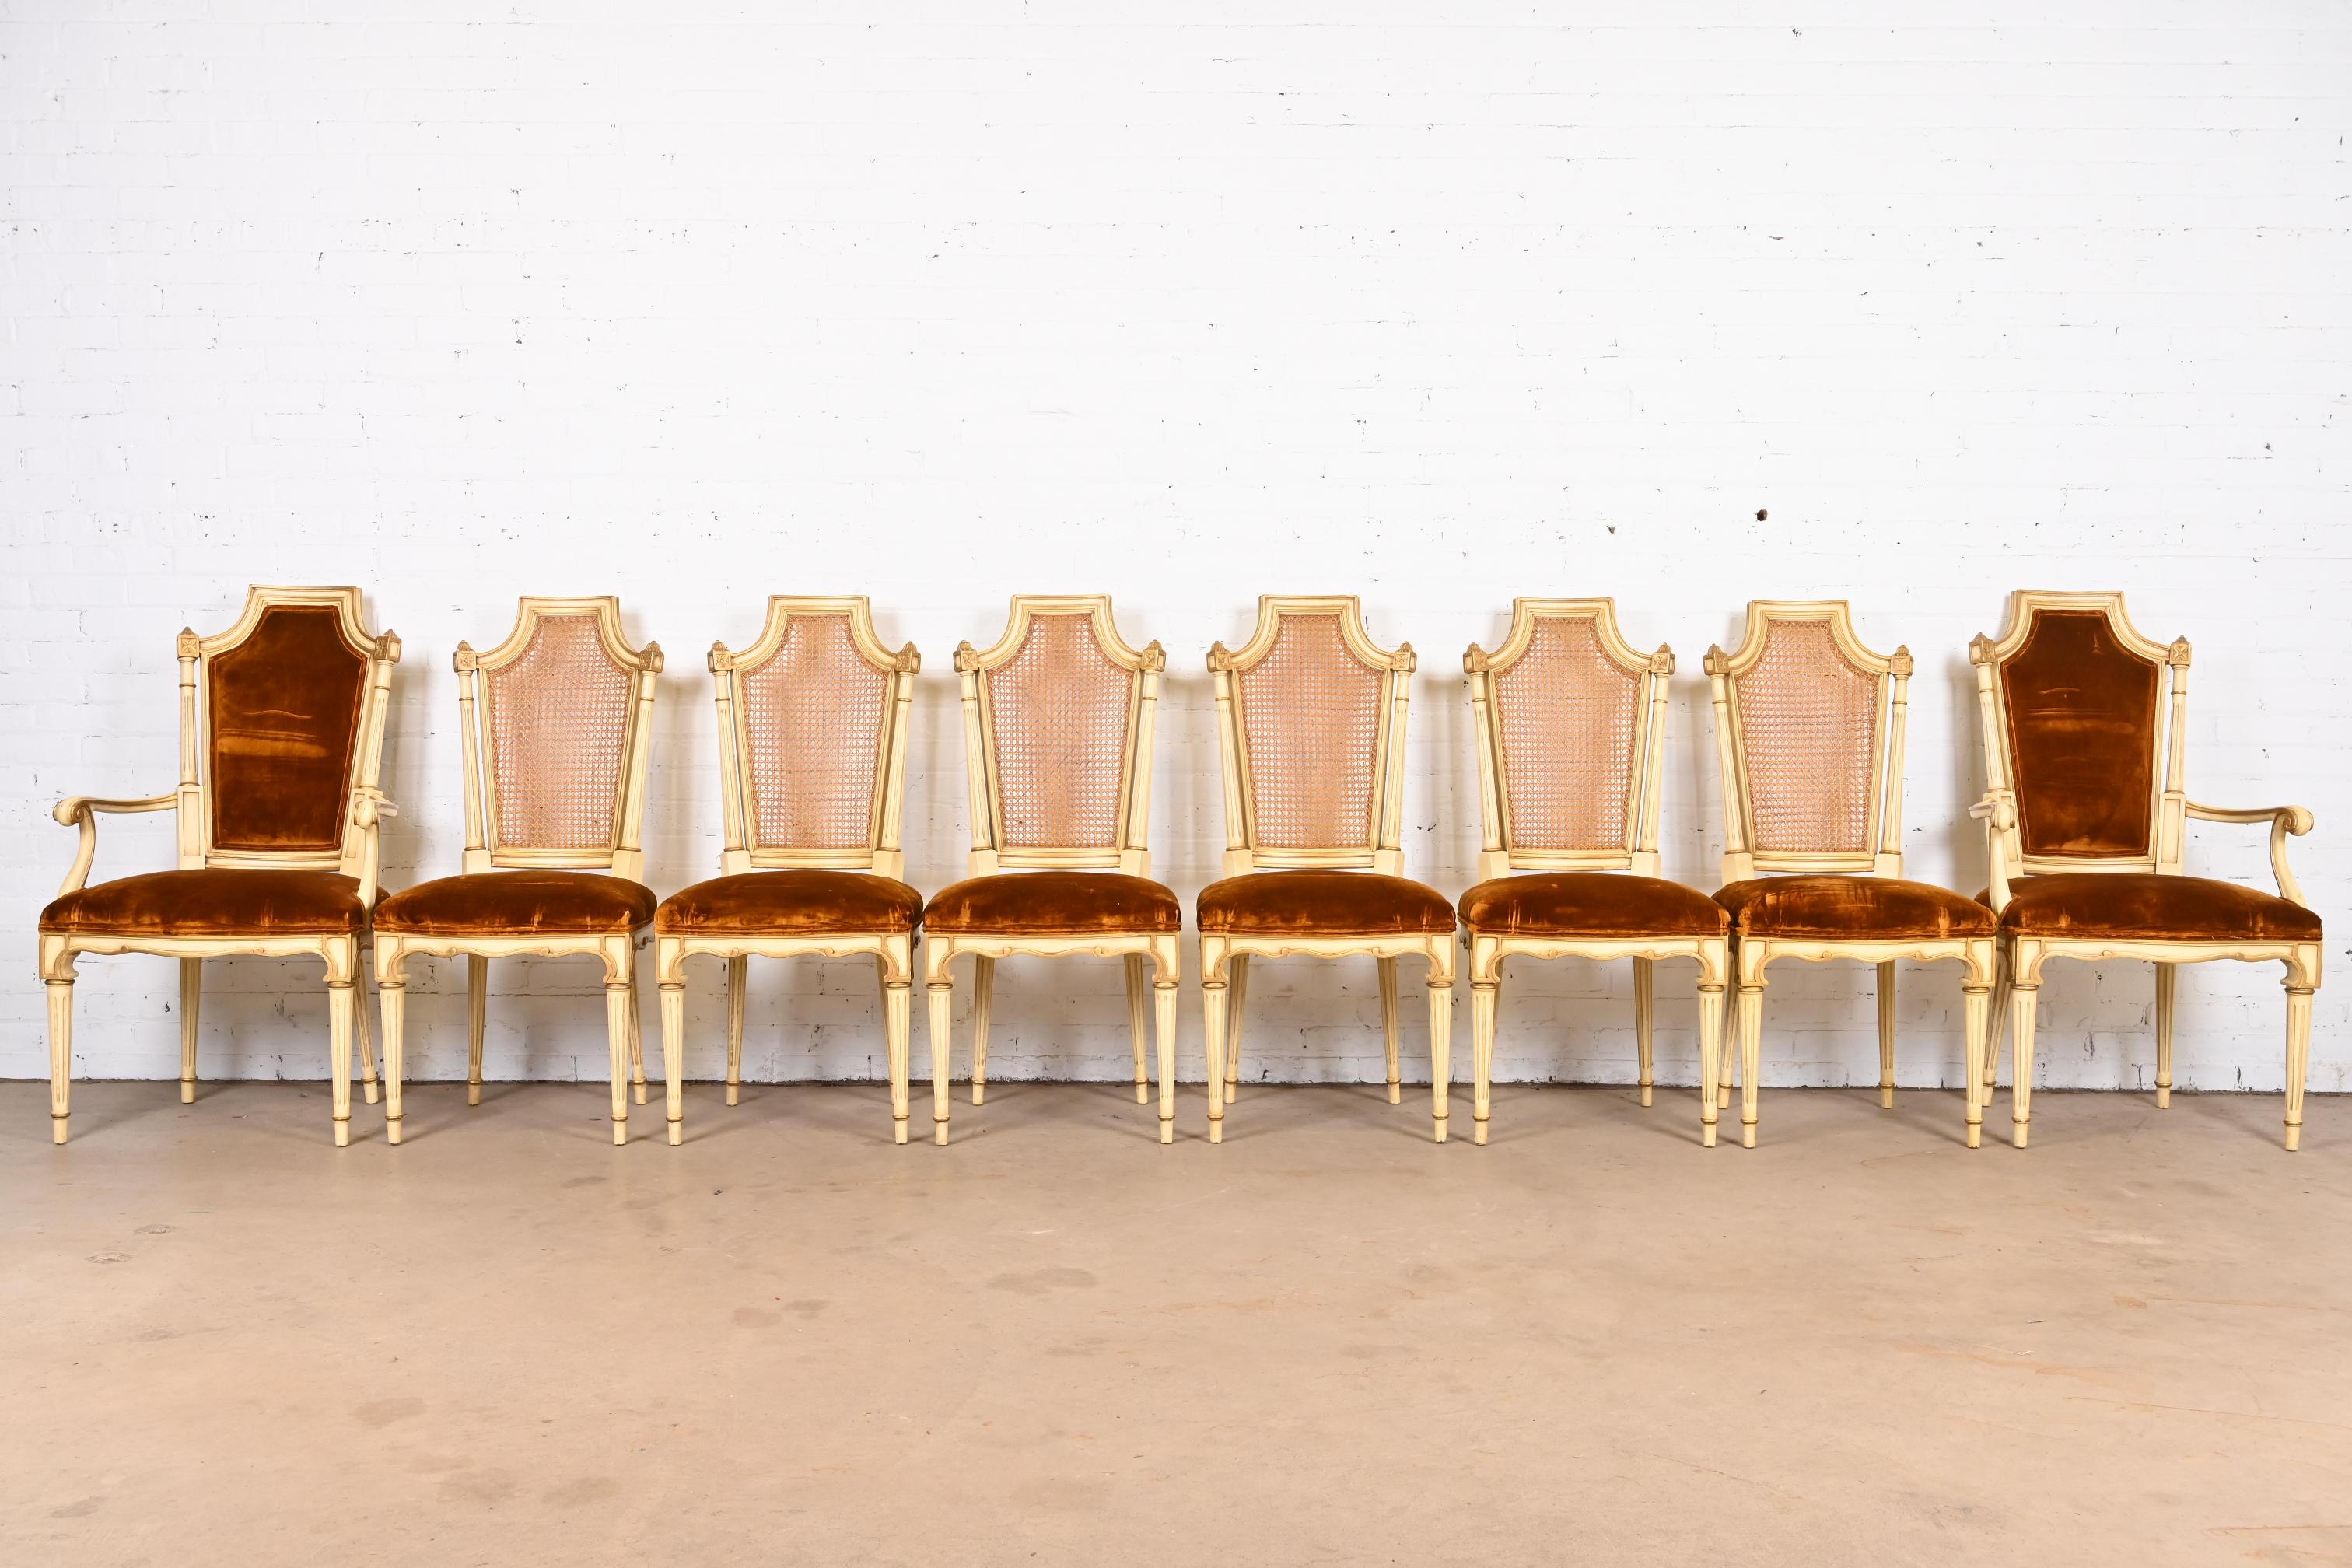 Un ensemble exceptionnel de huit chaises de salle à manger de style Louis XVI de la Régence française

Par Karges Furniture

USA, Circa 1960

Magnifiques cadres en noyer sculpté et peint en crème, avec des détails dorés, des dossiers cannelés et des